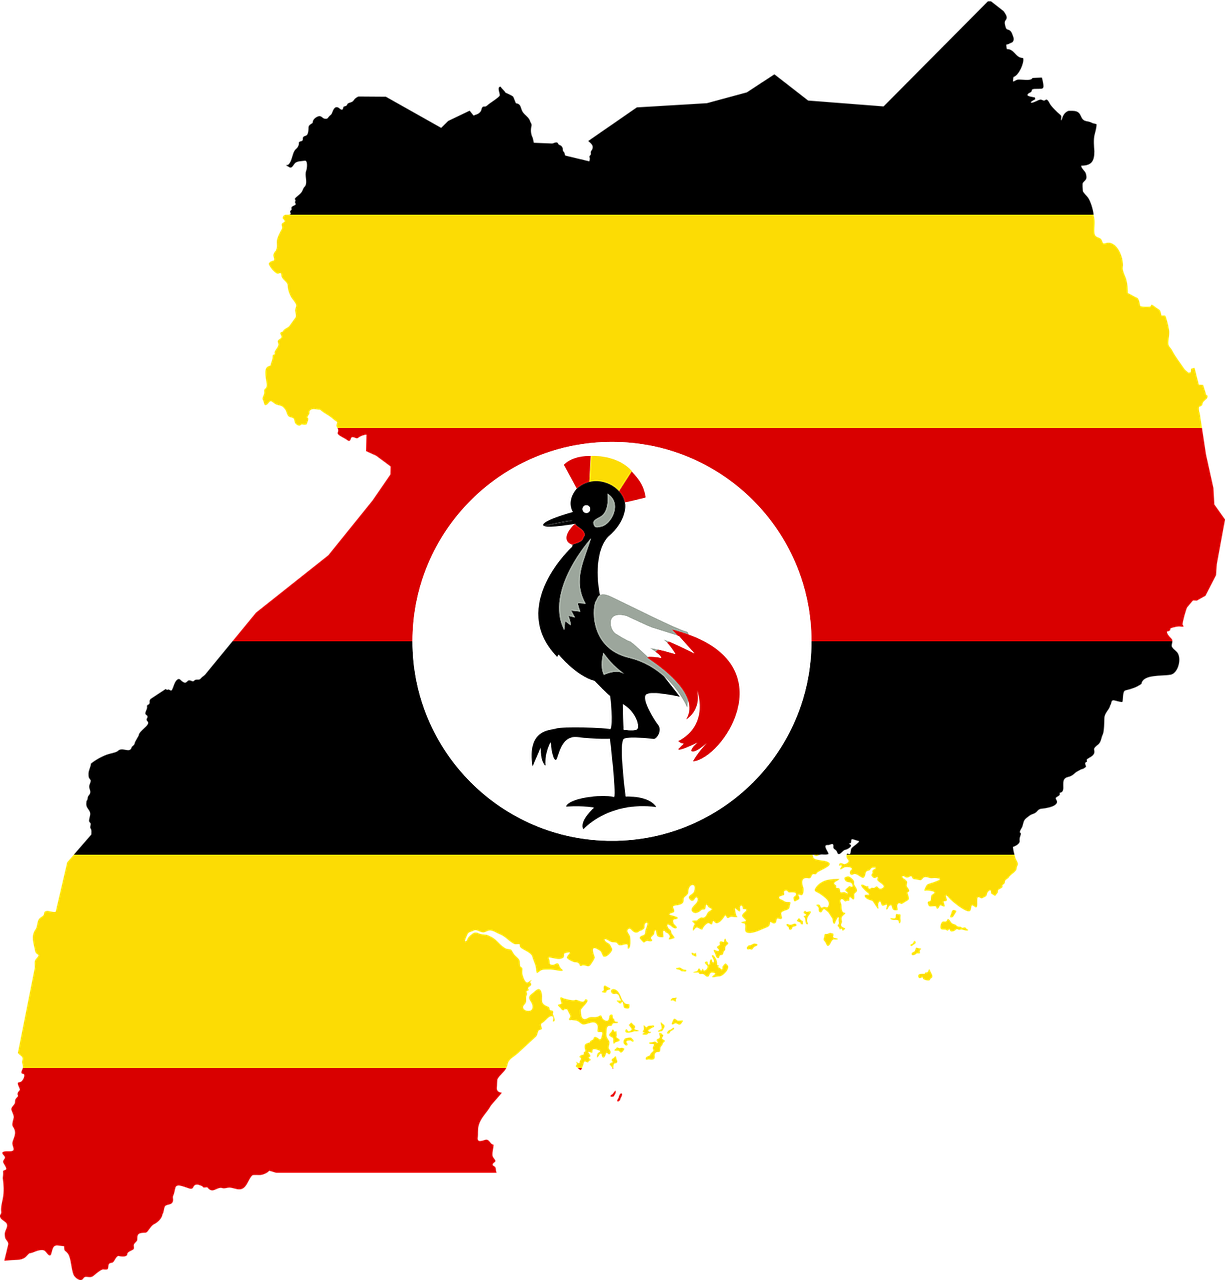 乌干达PVoC认证